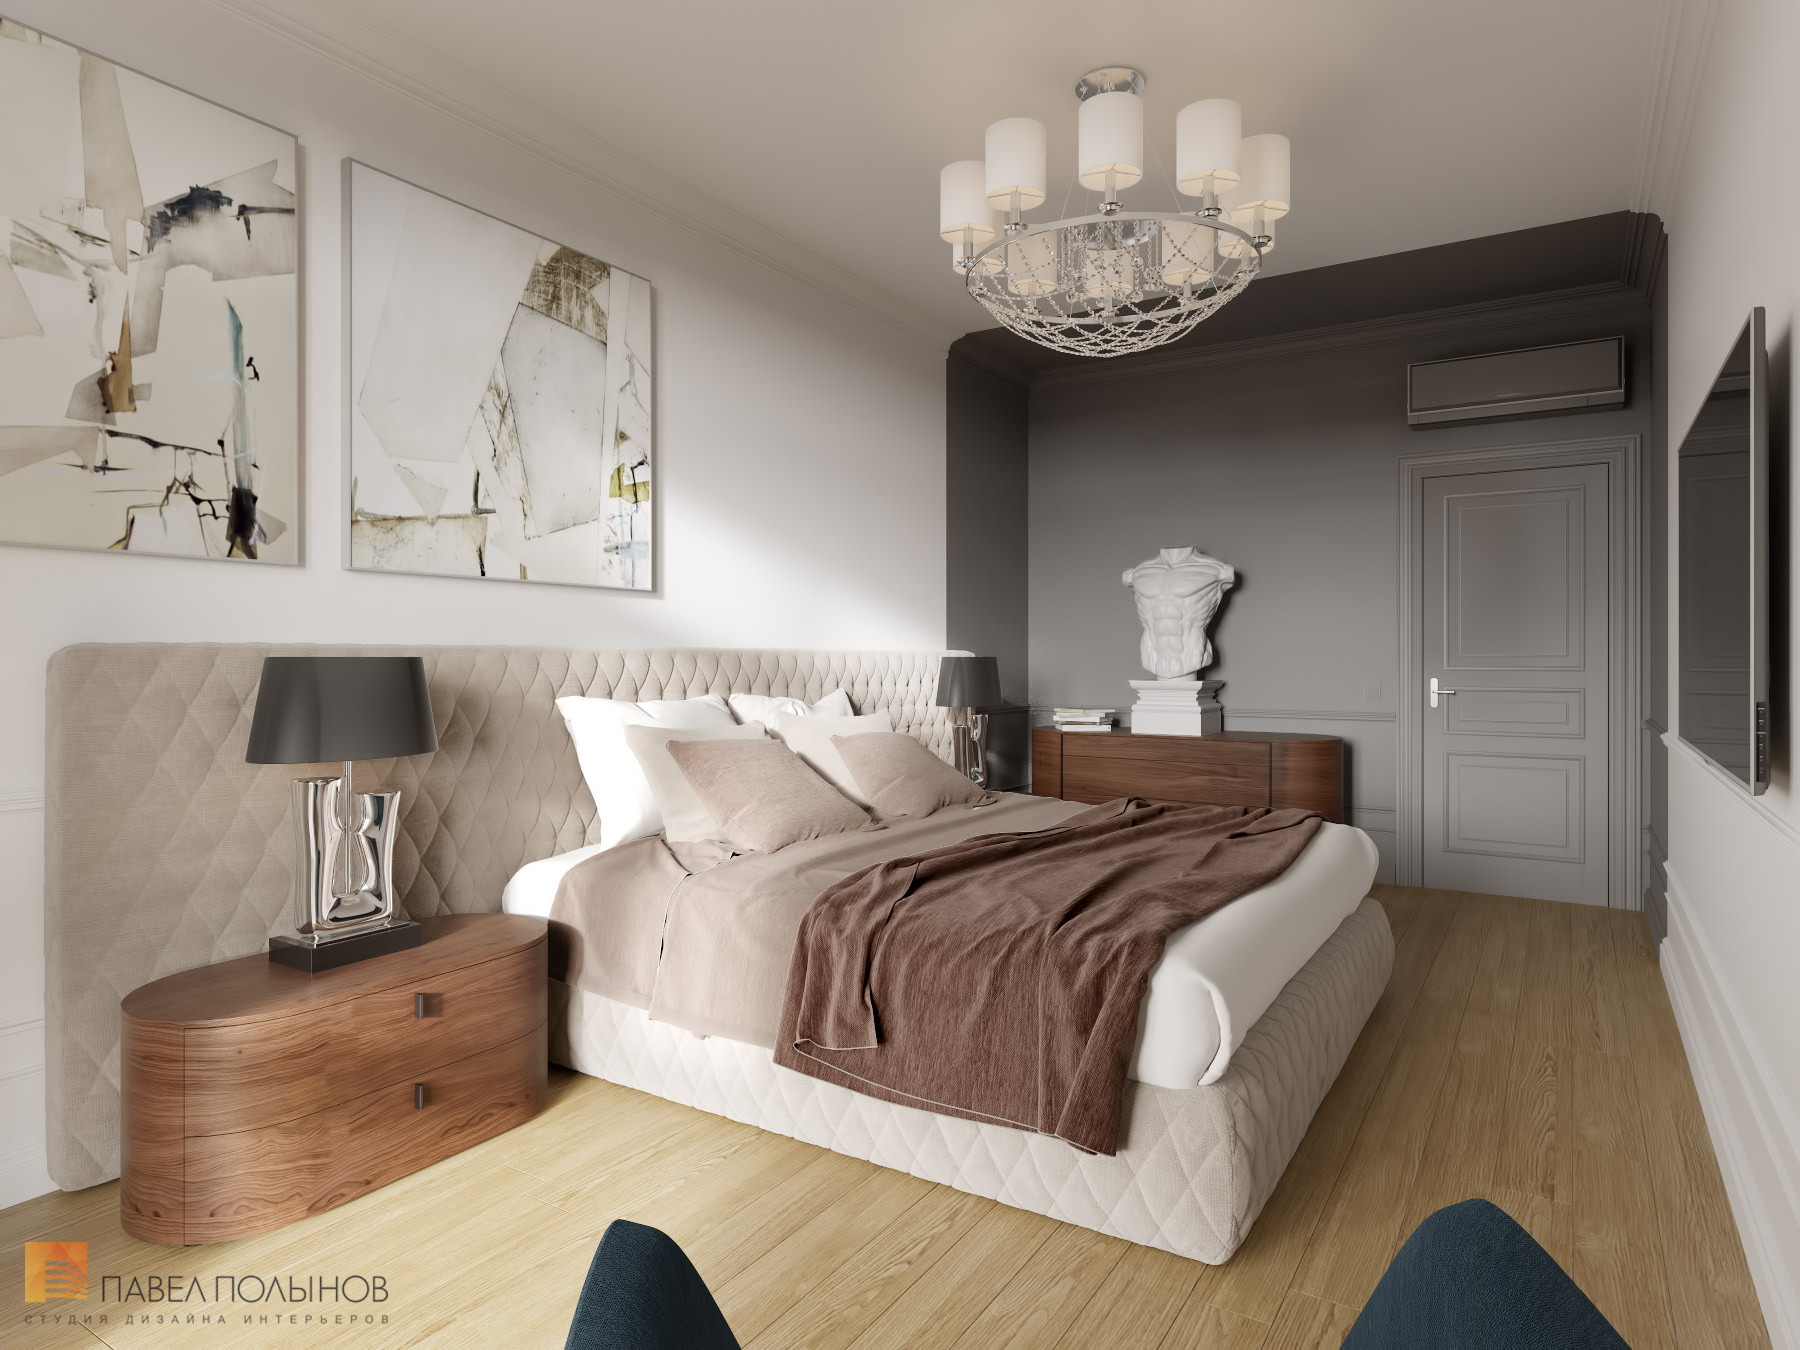 Фото спальня из проекта «Интерьер квартиры в стиле неоклассики, ЖК «Парадный квартал», 190 кв.м.»